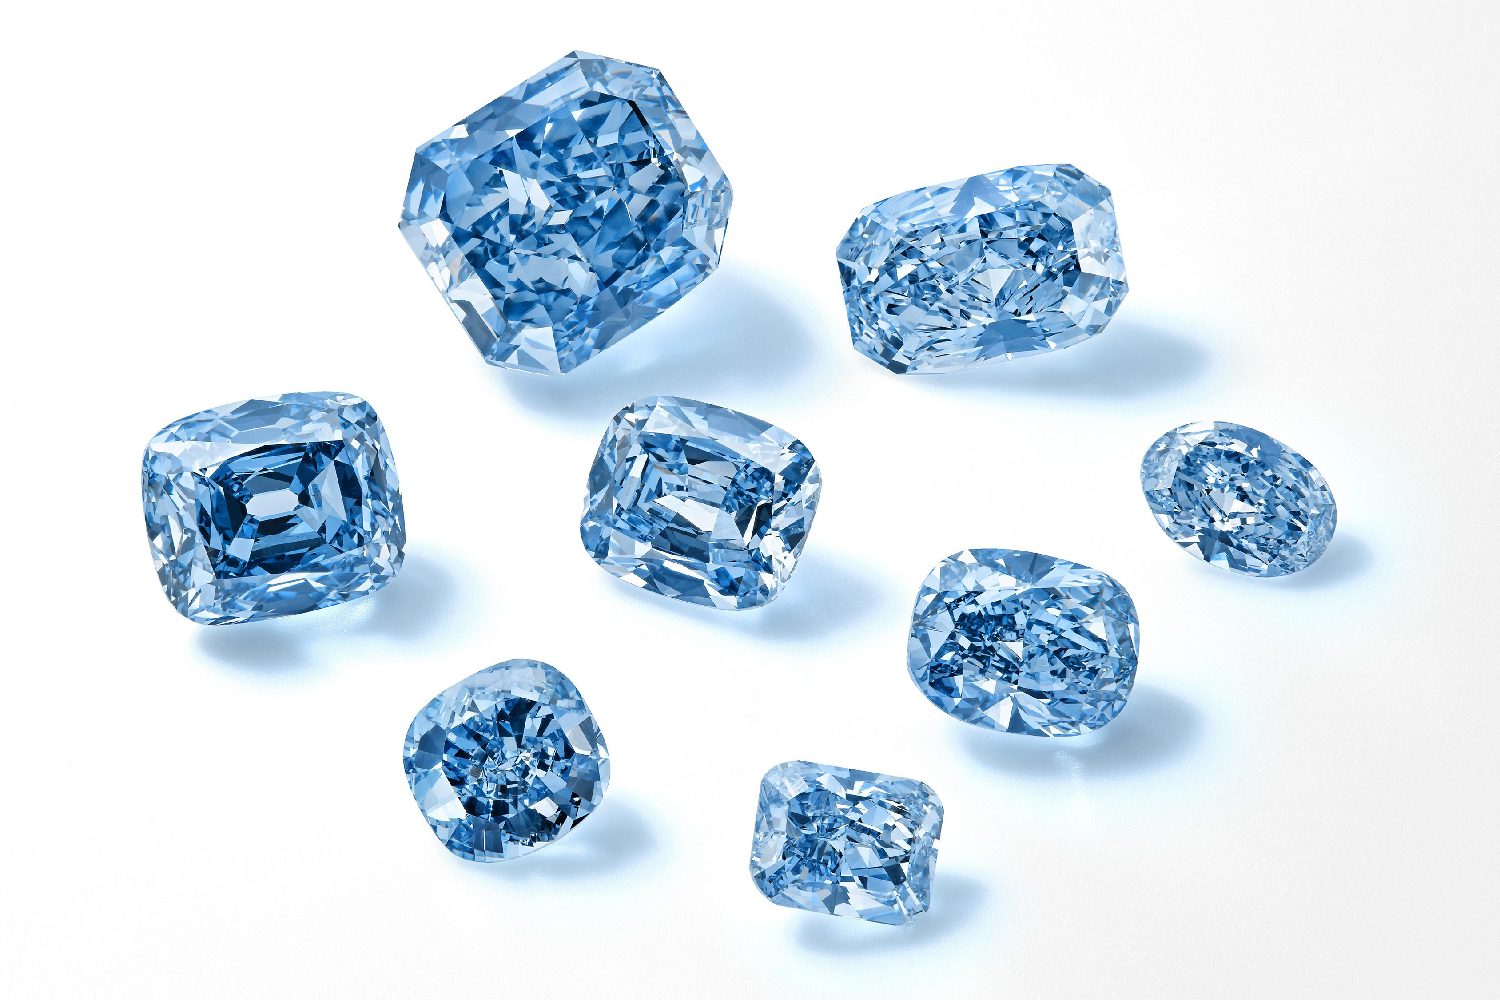 Raros diamantes azuis podem ser leiloados por R$ 450 mi - Forbes